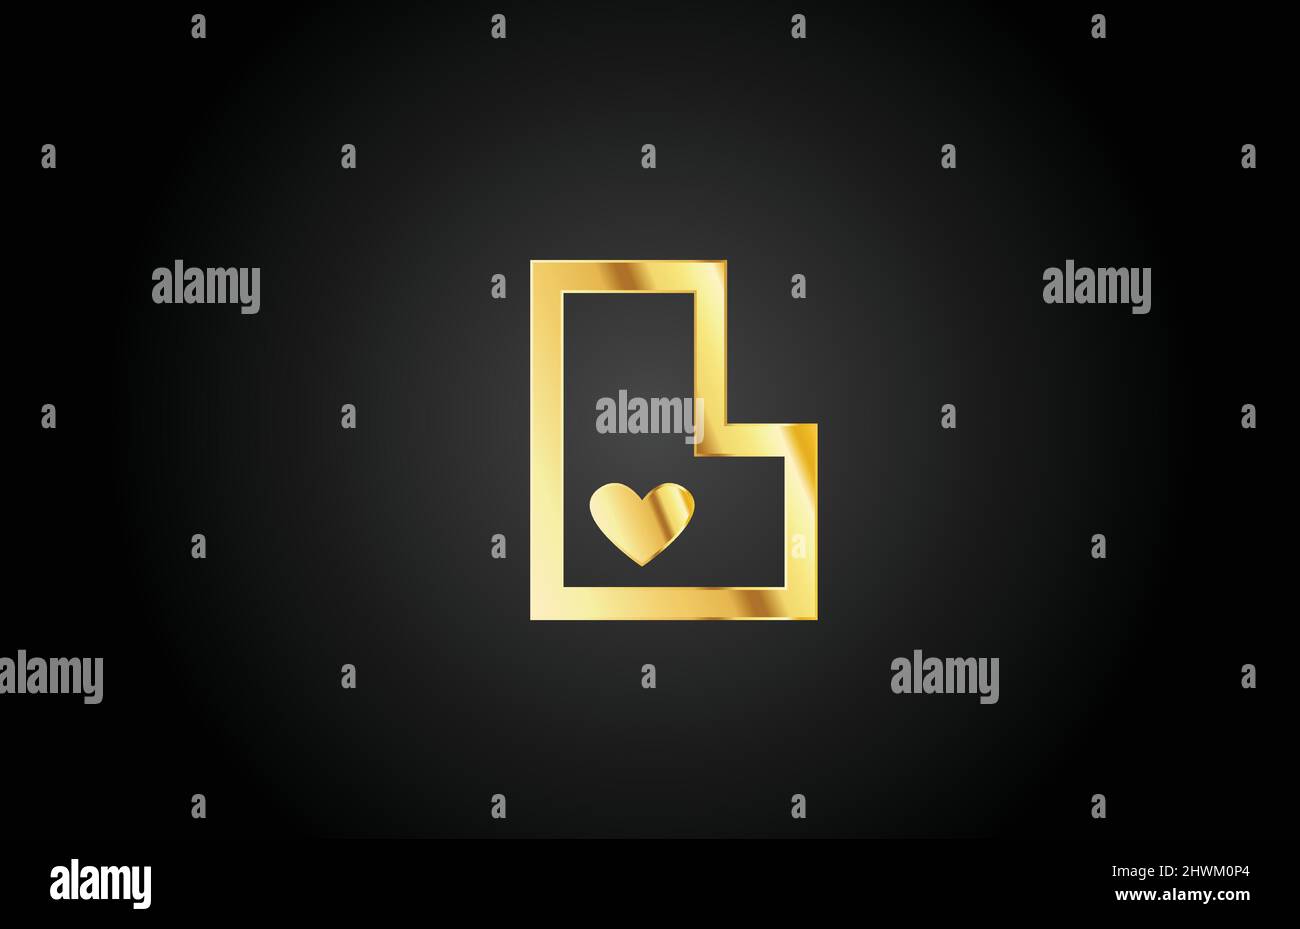 Gold Classy Love Heart LV Letter Logo Stock Illustration